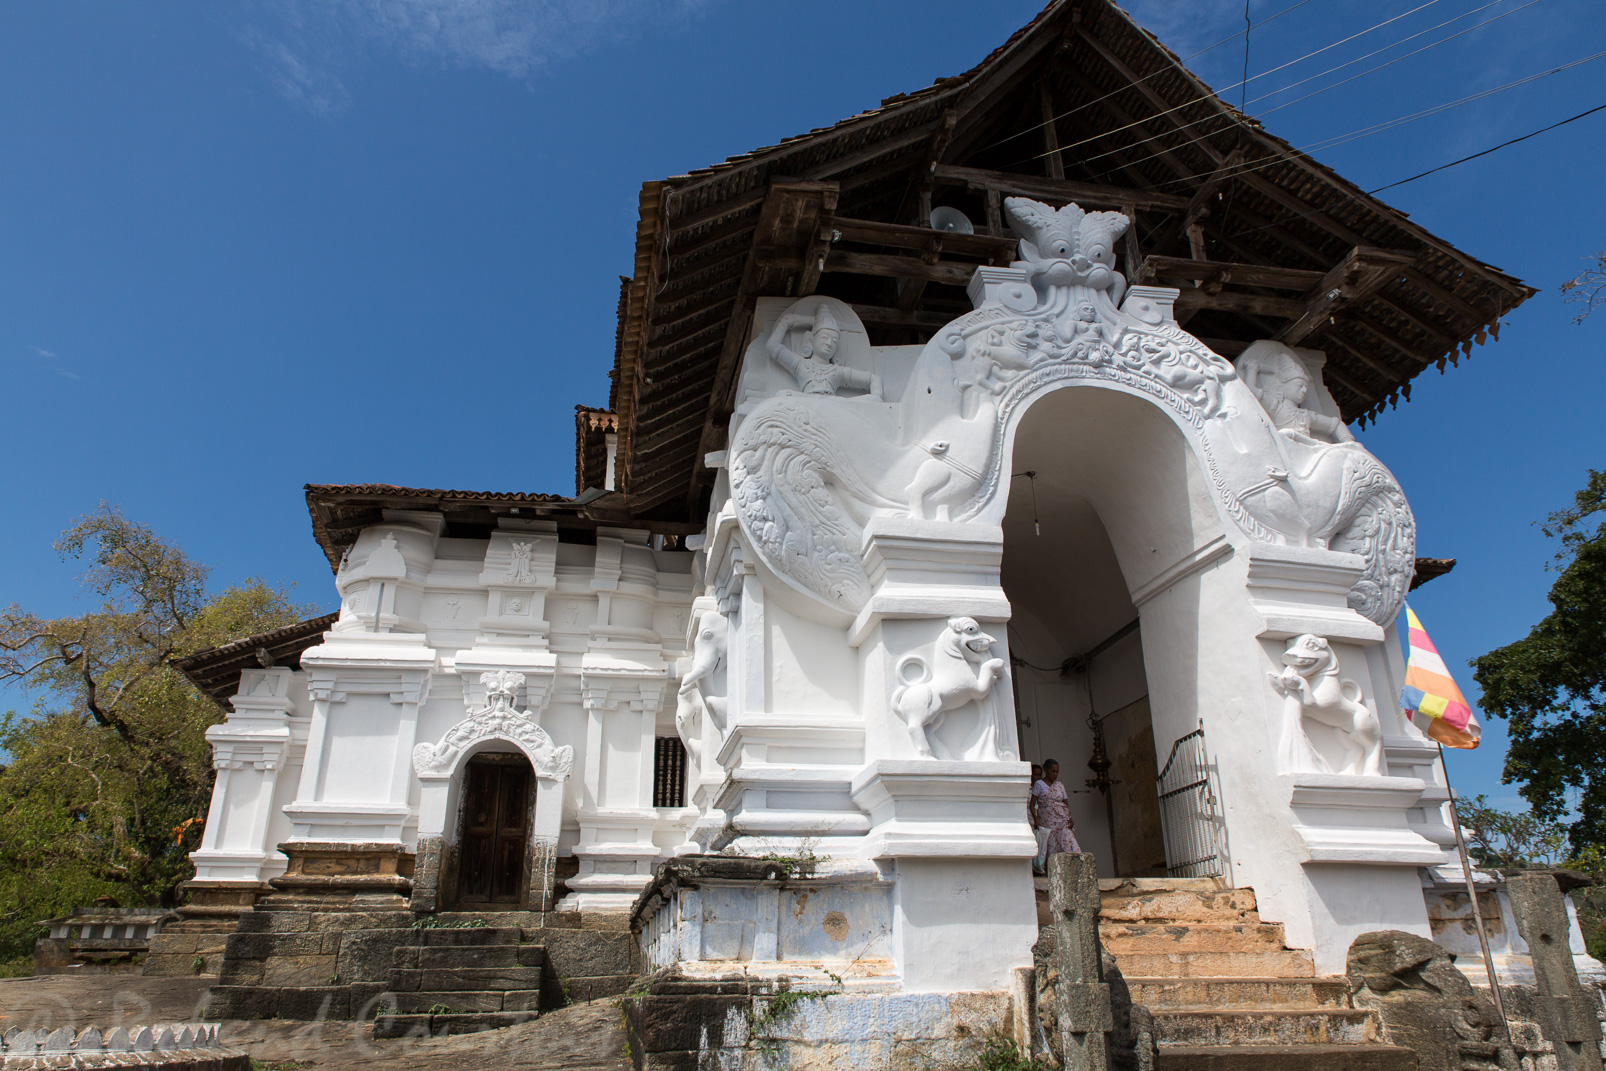 Le temple de Lankatilake datant du XIVème siècle a été construit au sommet d'un rocher. Son architecture mêle des éléments hindous et bouddhistes